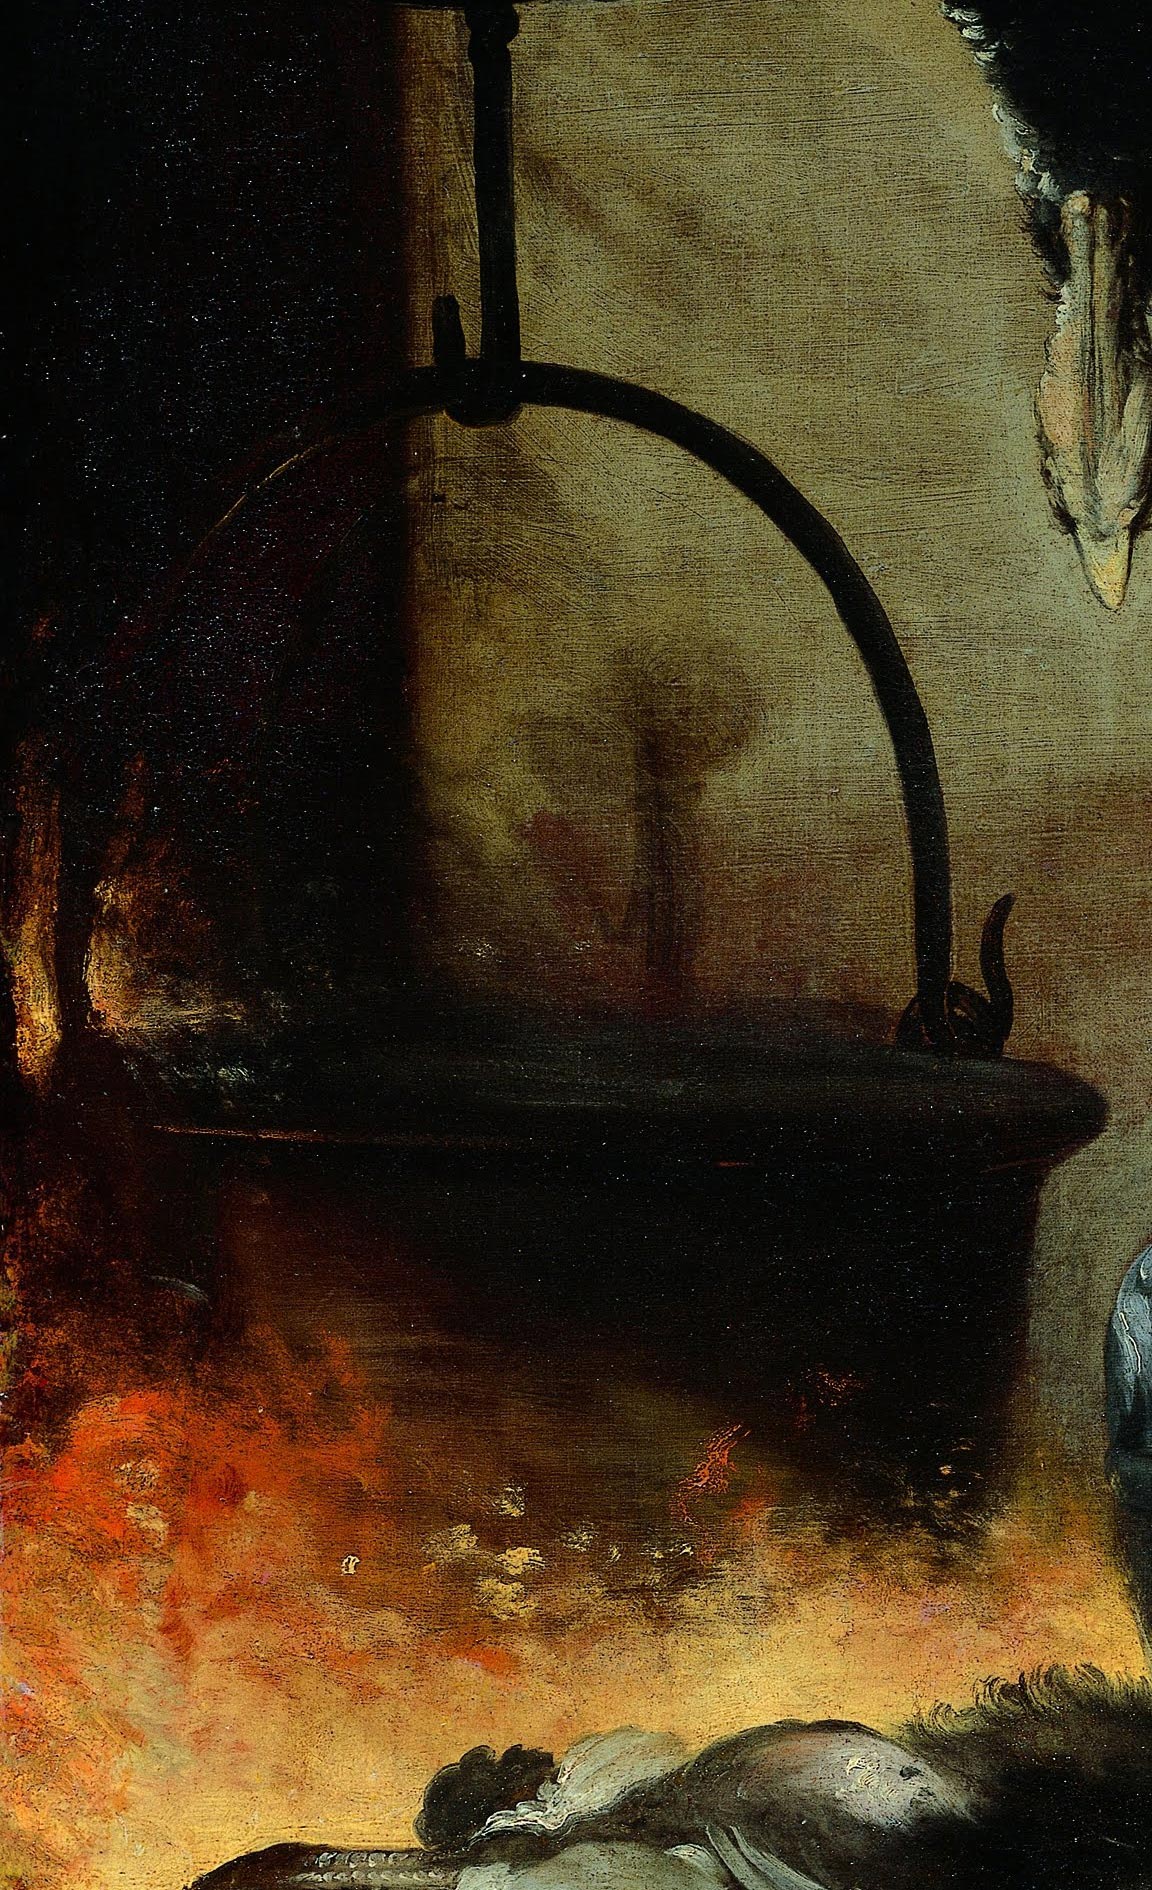 Bernardo Strozzi, The cook, detail of pot on fire